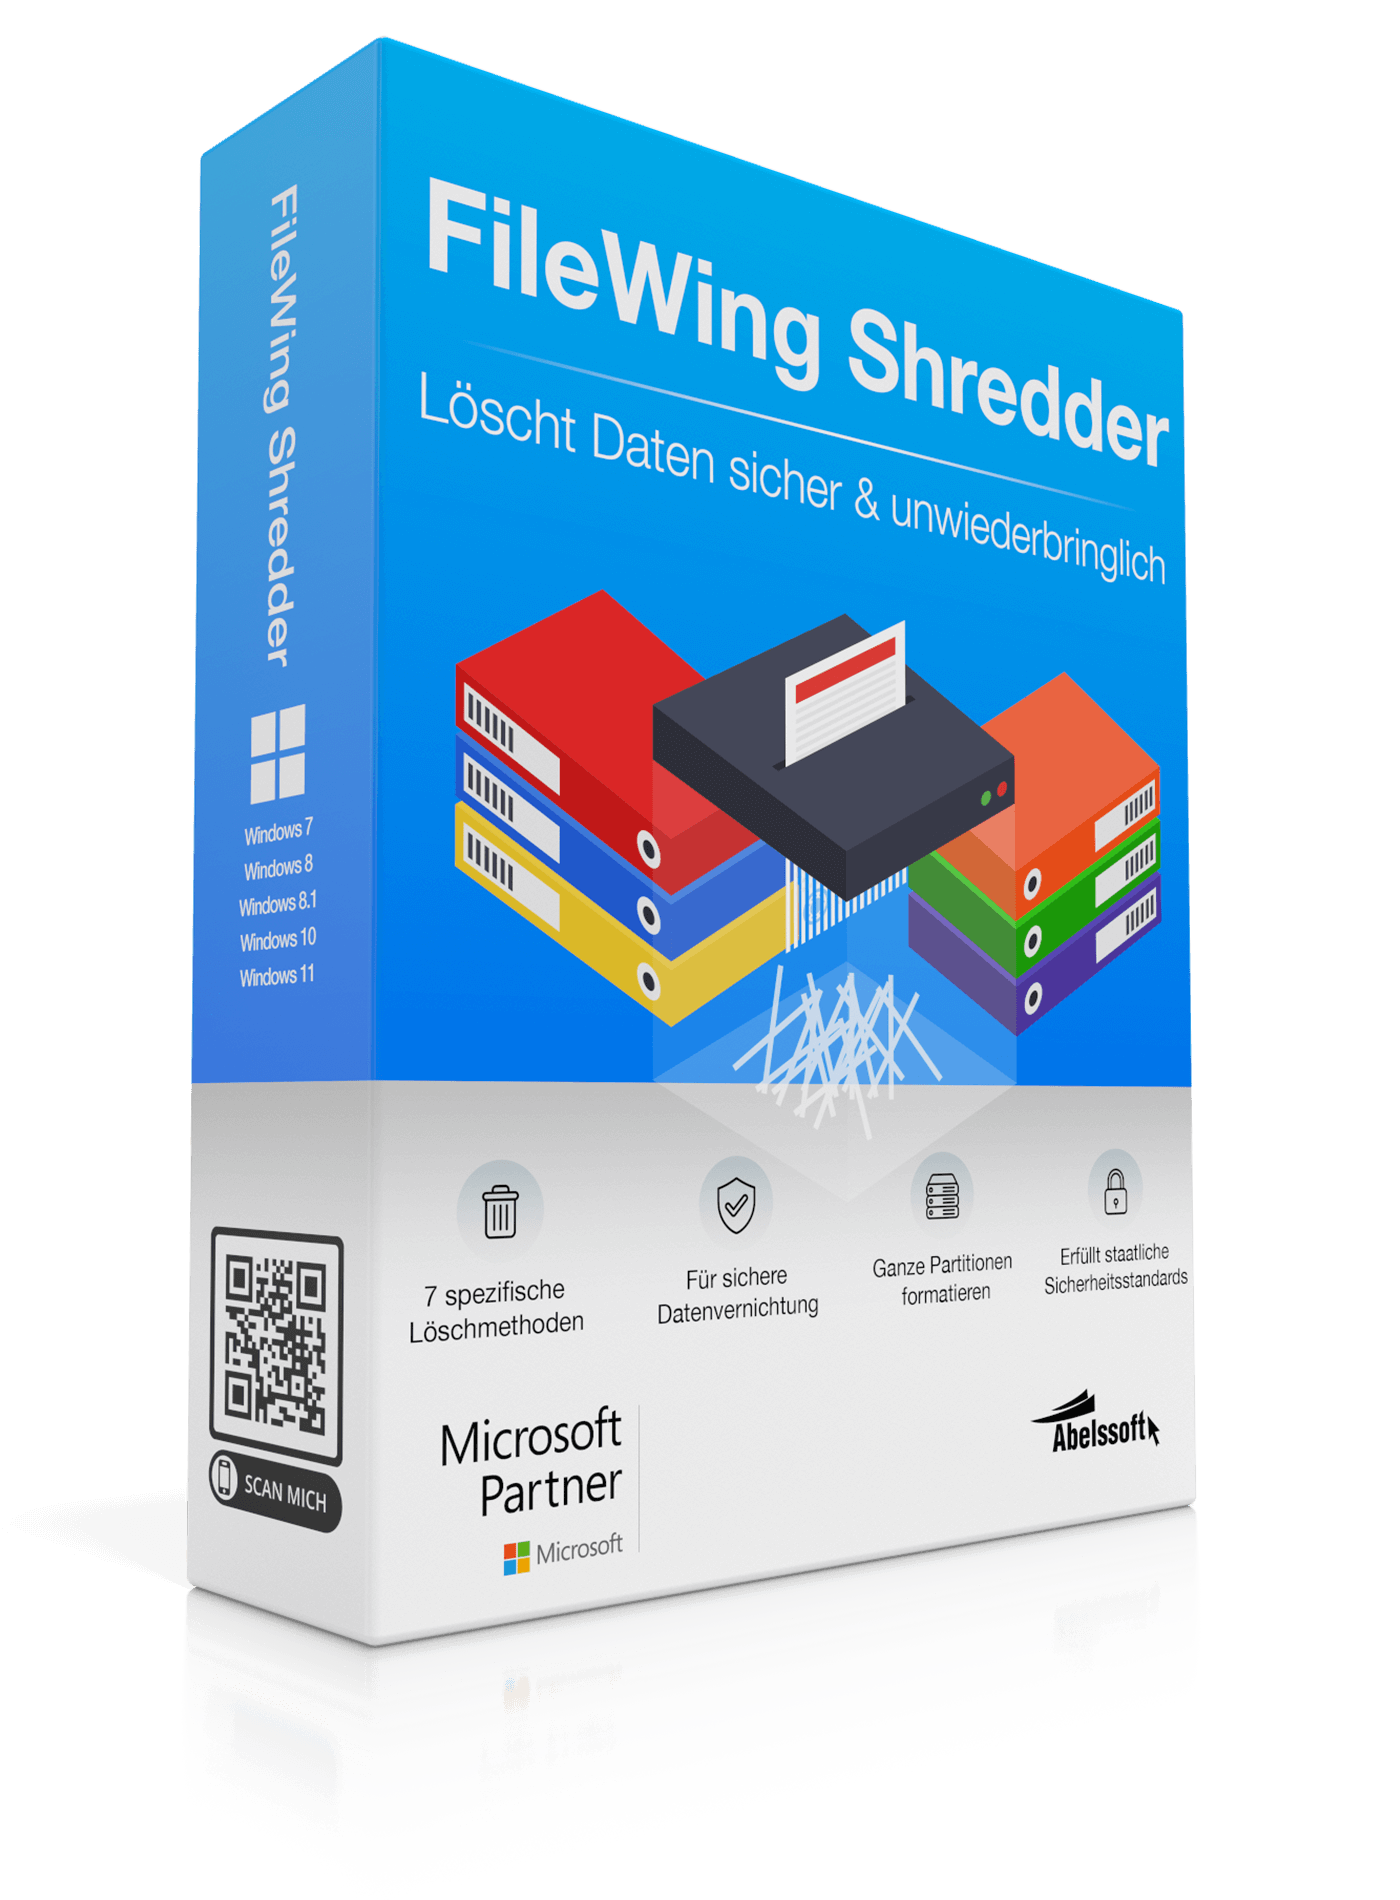 FileWing Shredder